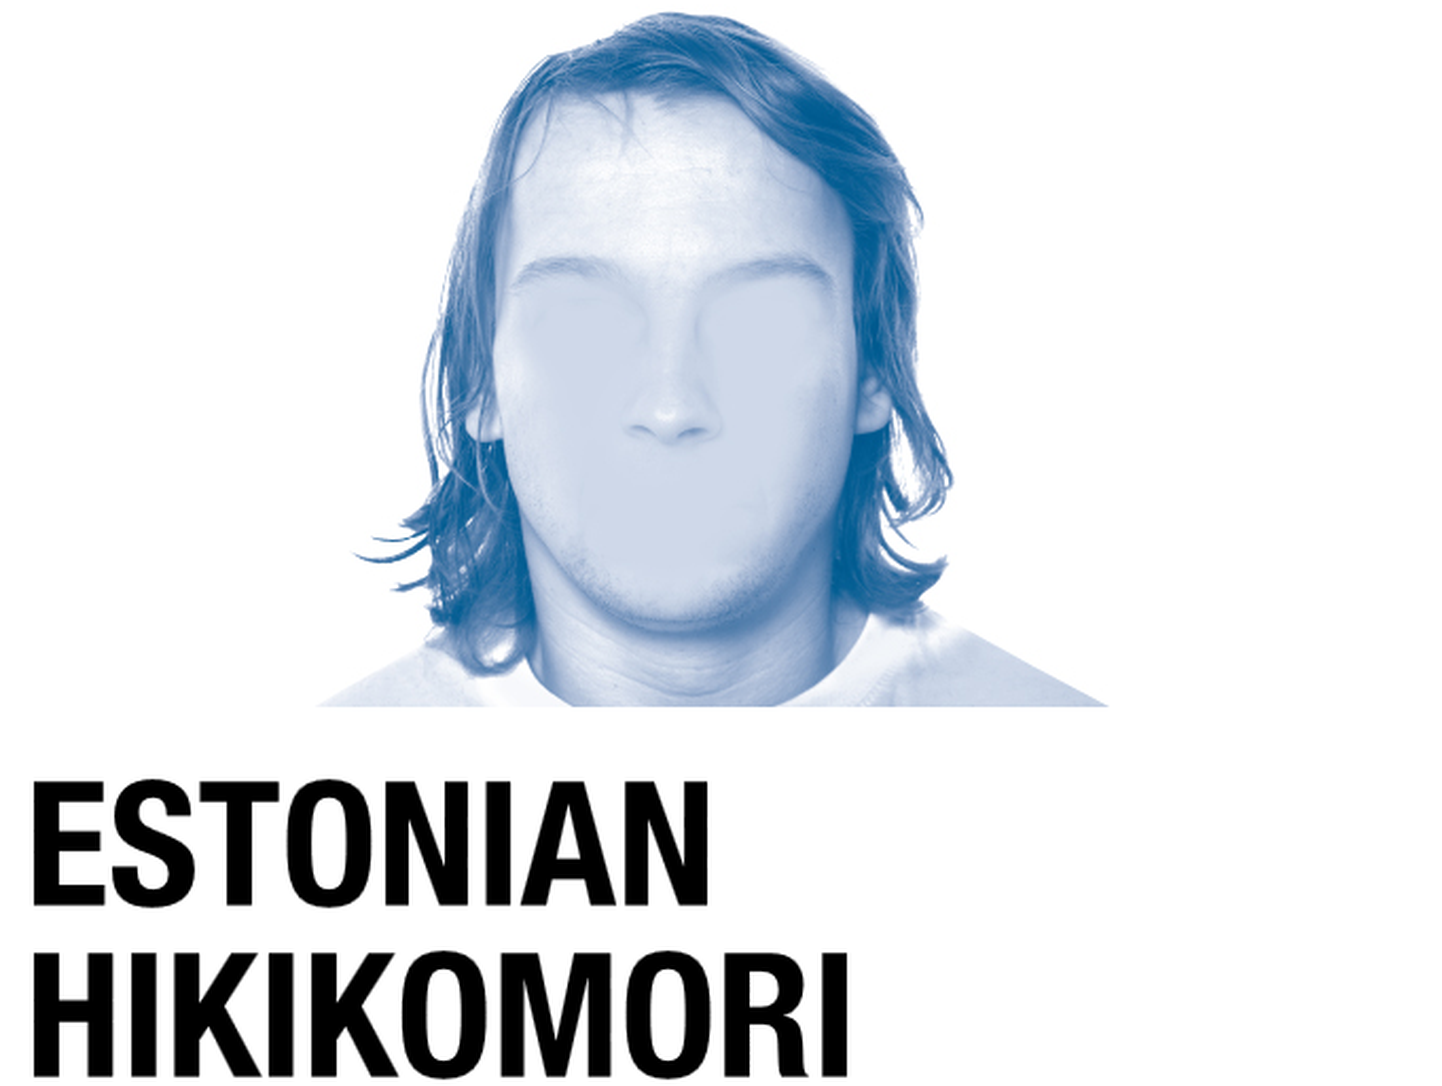 Estonian hikikomori